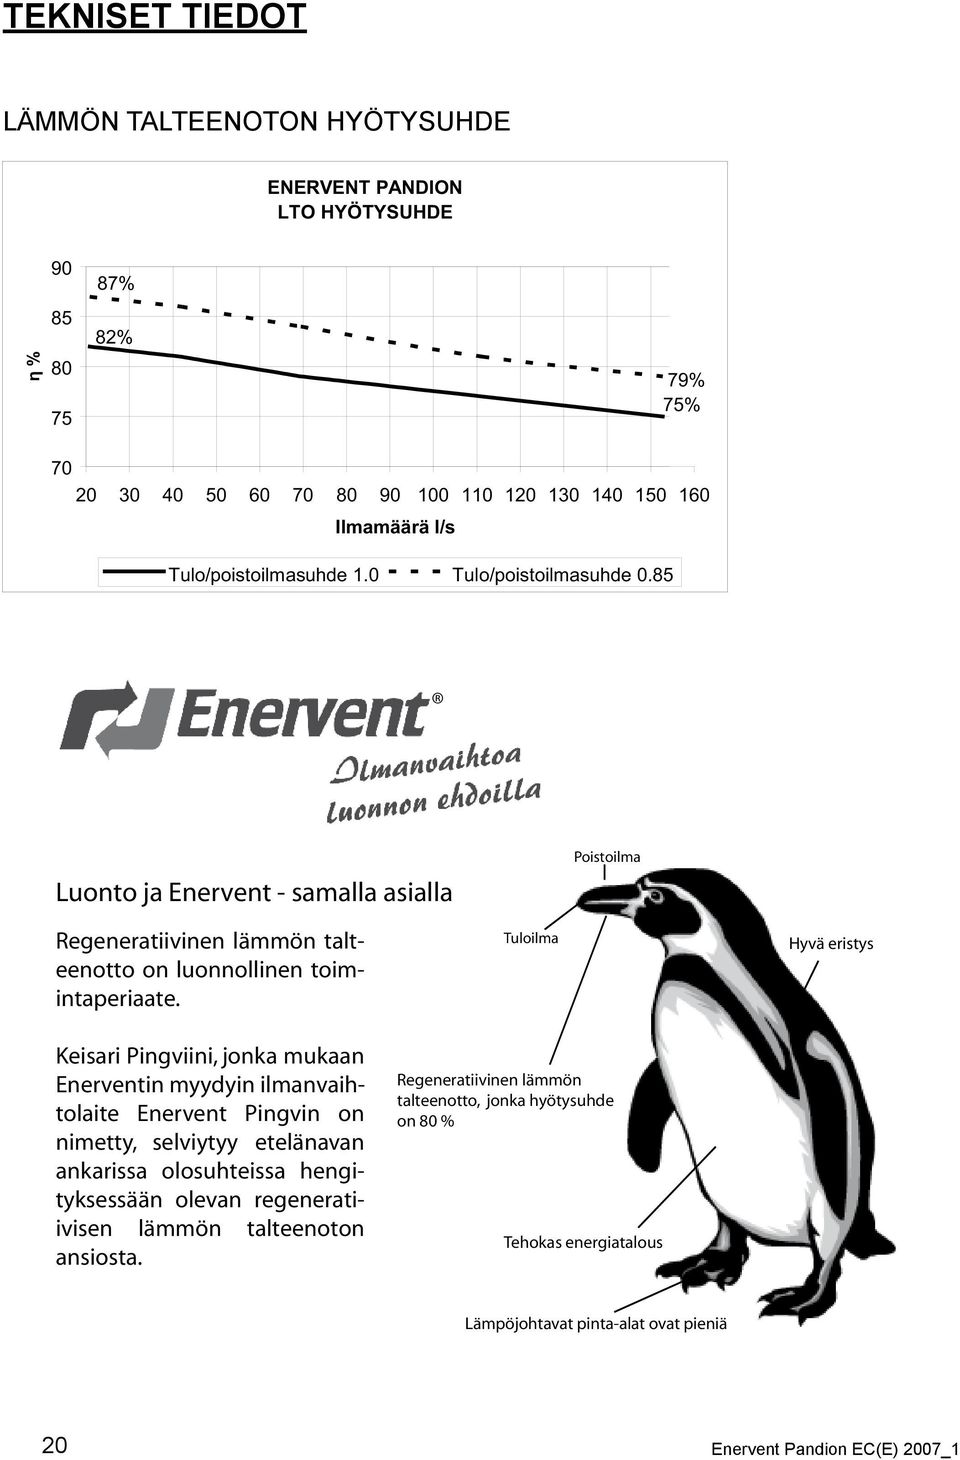 Keisari Pingviini, jonka mukaan Enerventin myydyin ilmanvaihtolaite Enervent Pingvin on nimetty, selviytyy etelänavan ankarissa olosuhteissa hengityksessään olevan regeneratiivisen